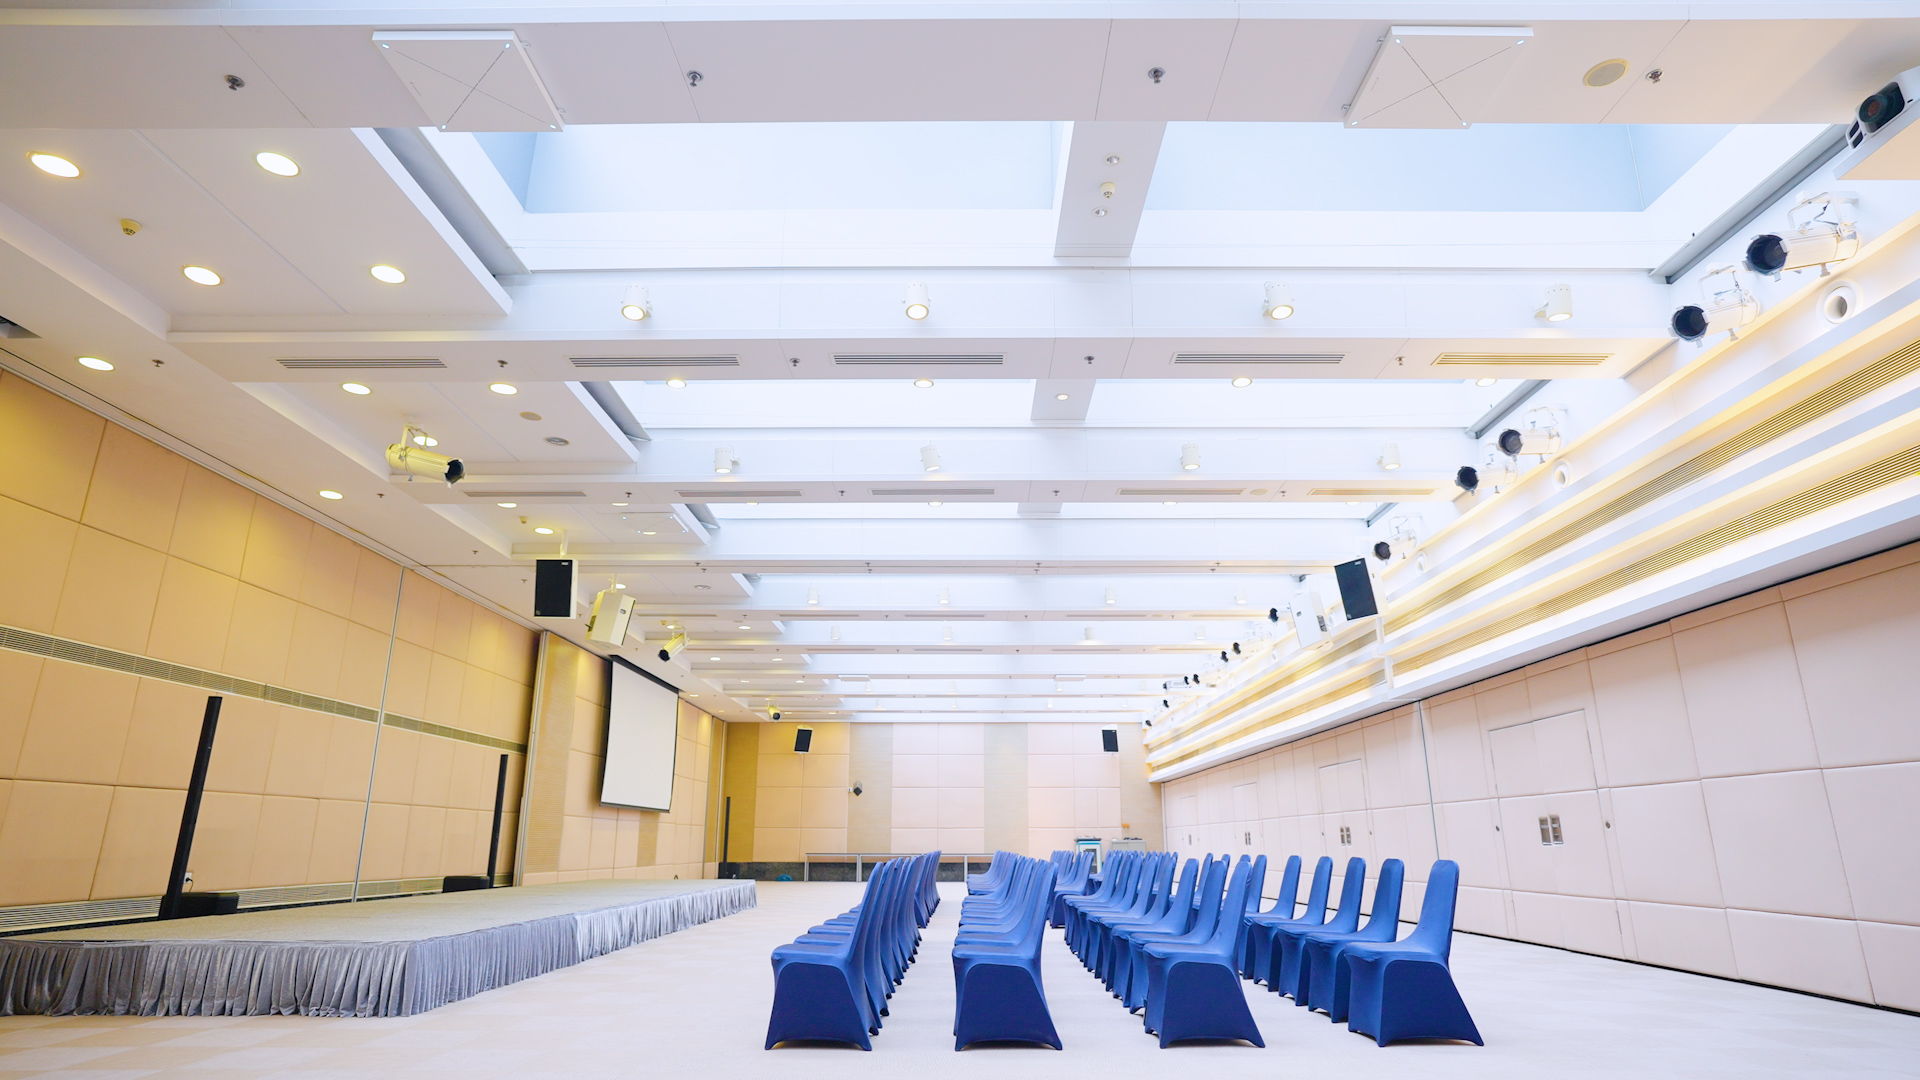 上海德国中心为其大会议室安装了5台TCC 2